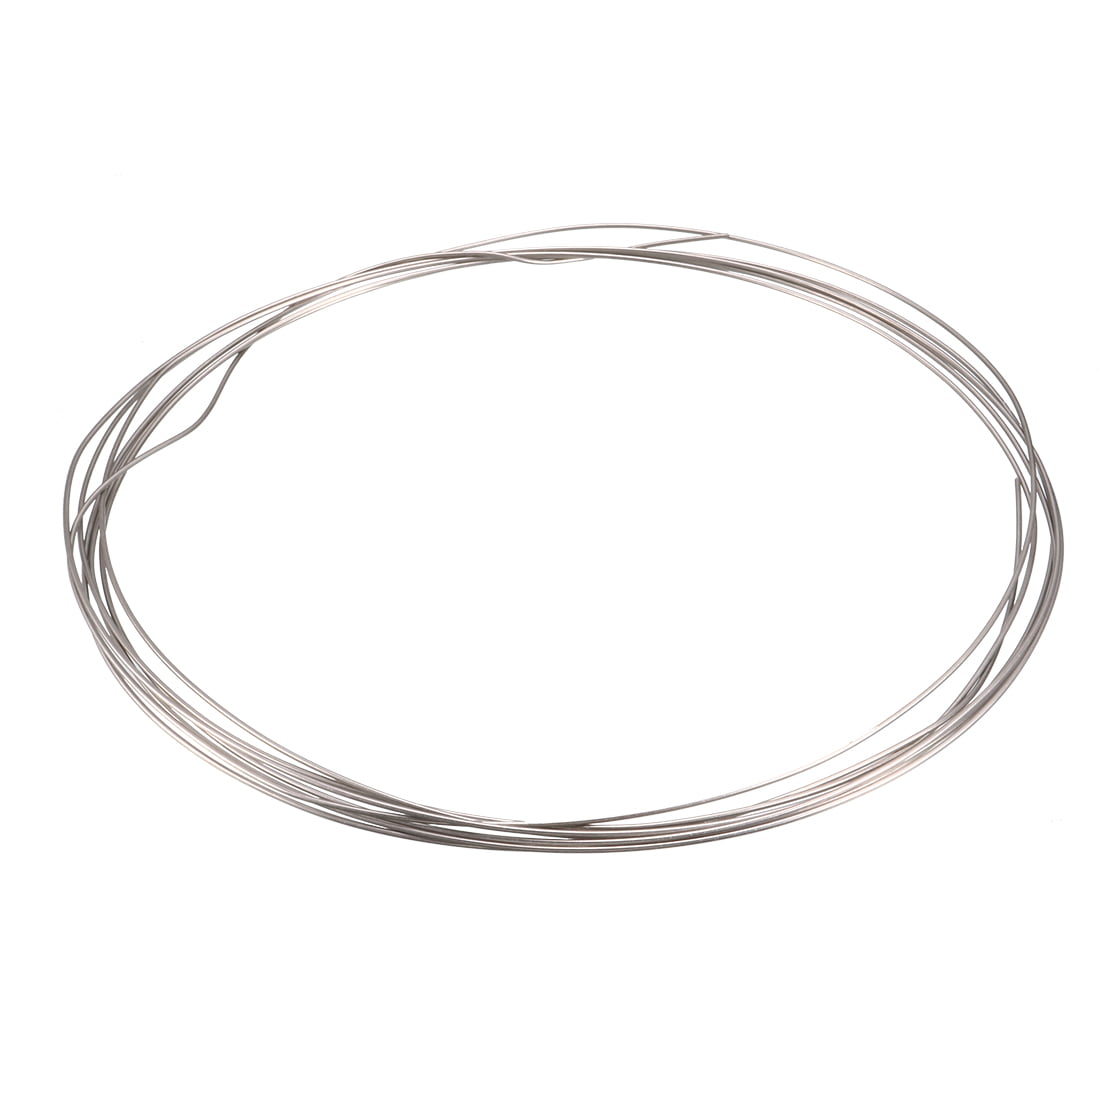 Nichrome 60 ribbon flat 10 ft spool wire 3/16" X 0.0040" 0.71 ohms/ft 